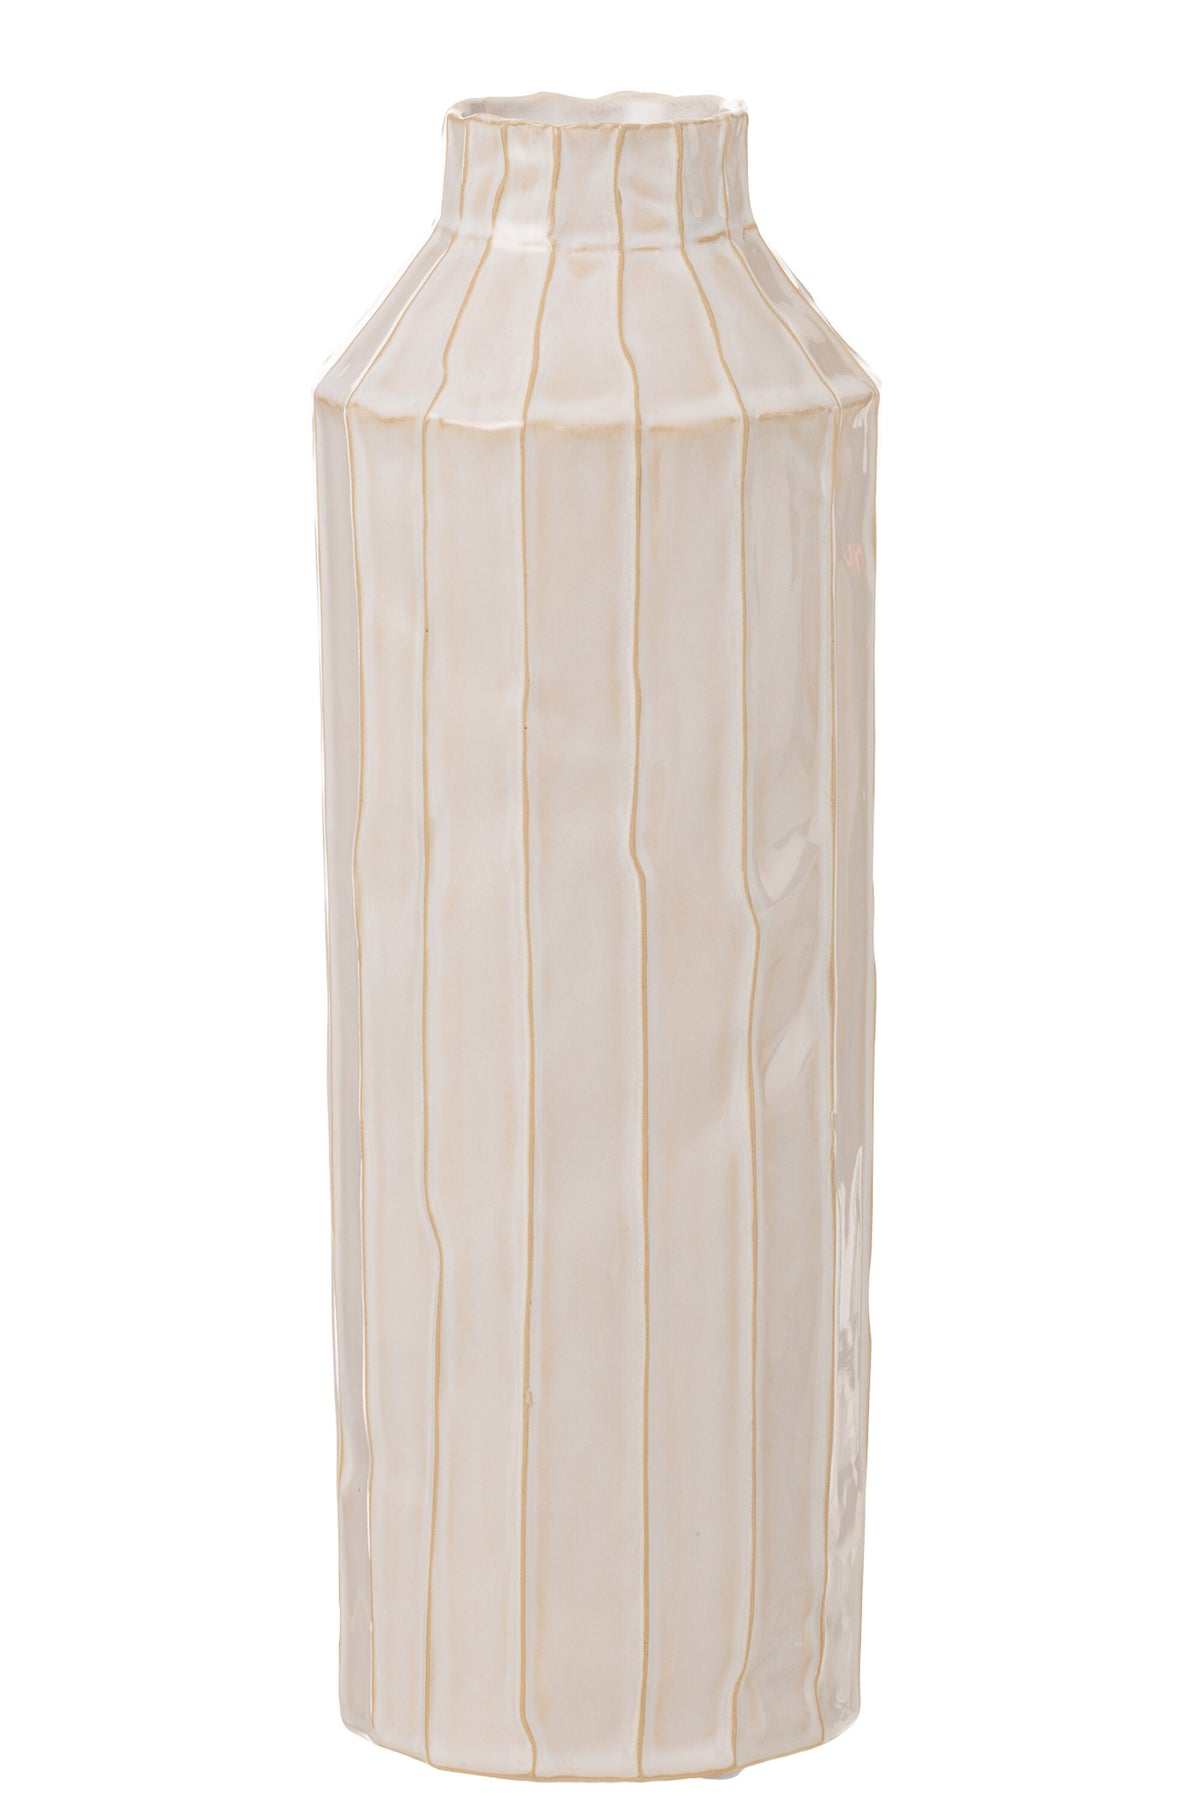 Vase Milchflasche Keramik Weiß L